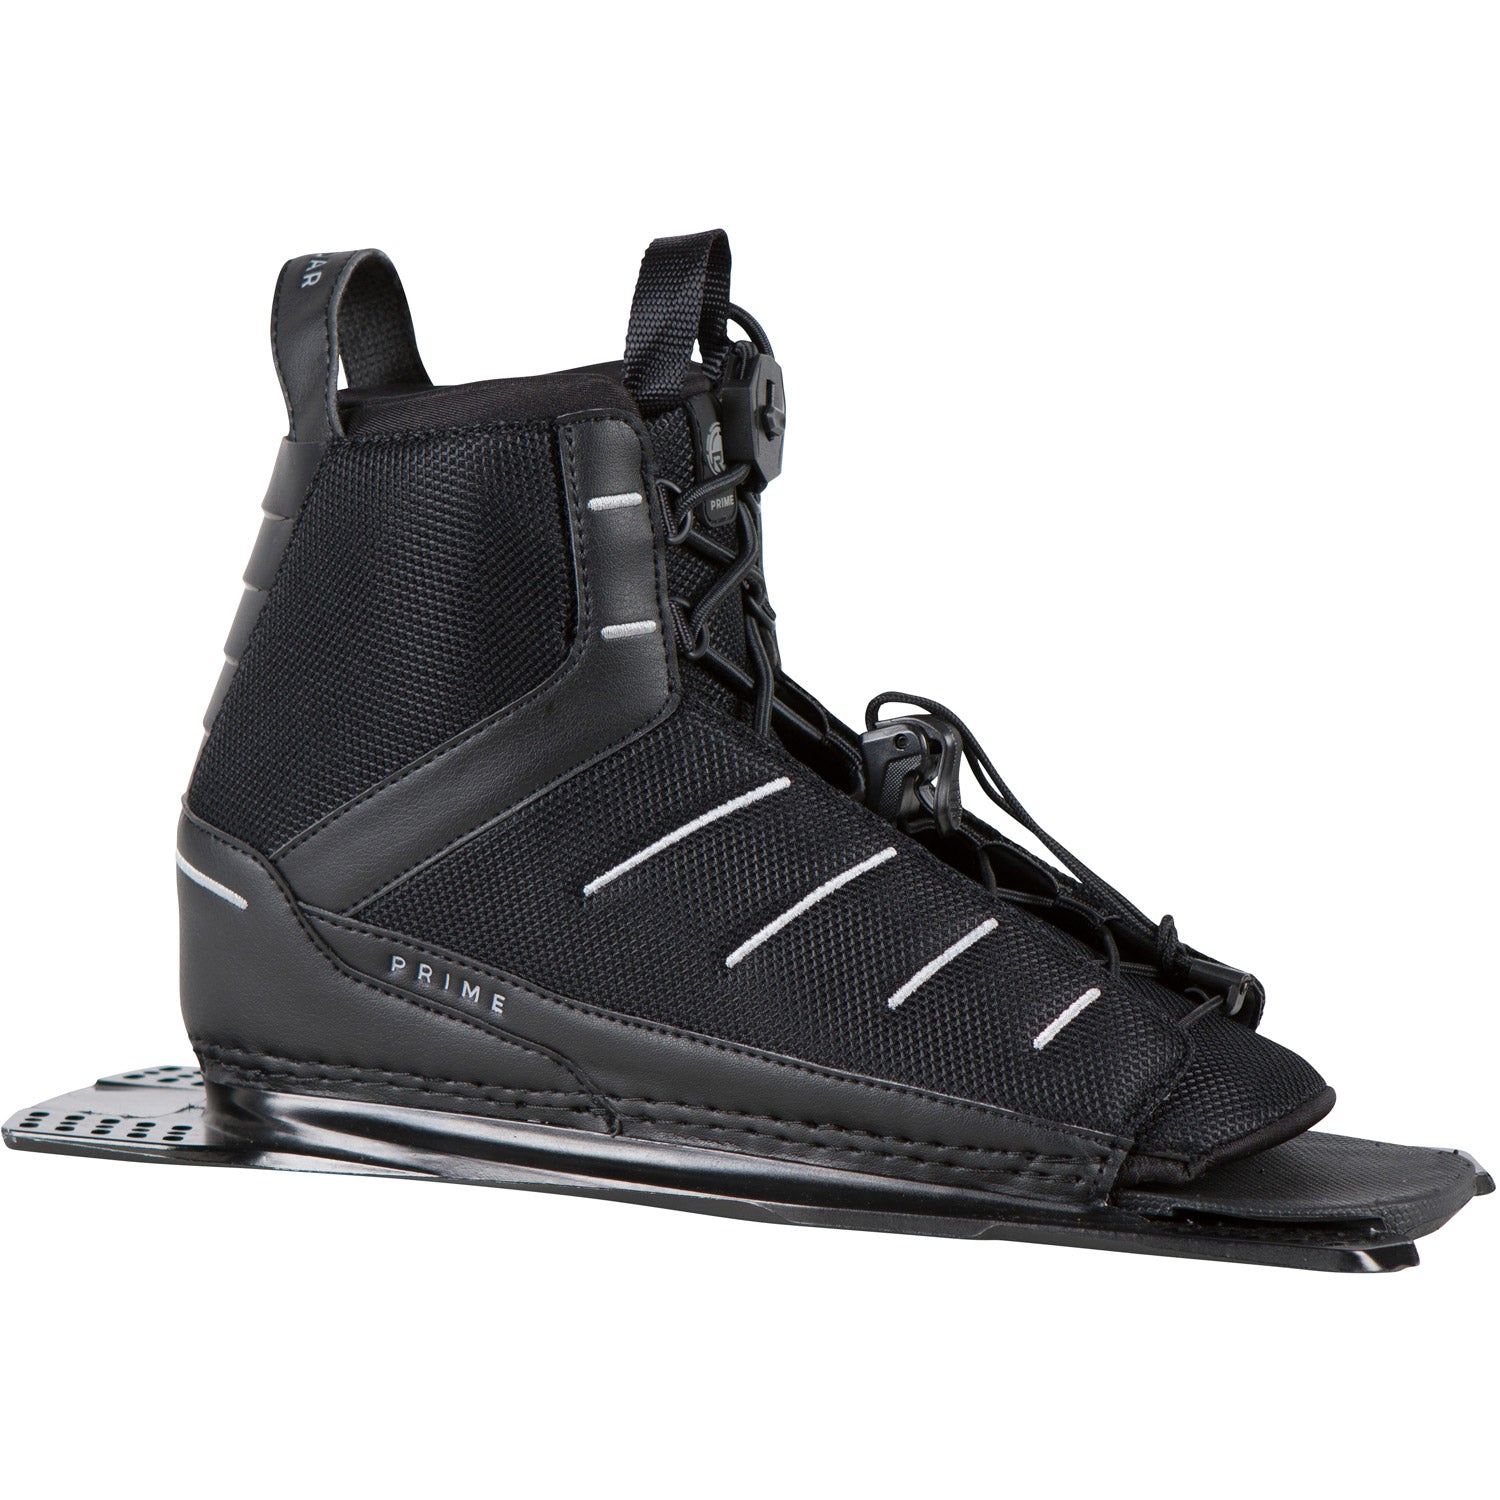 Prime Slalom Ski Boot